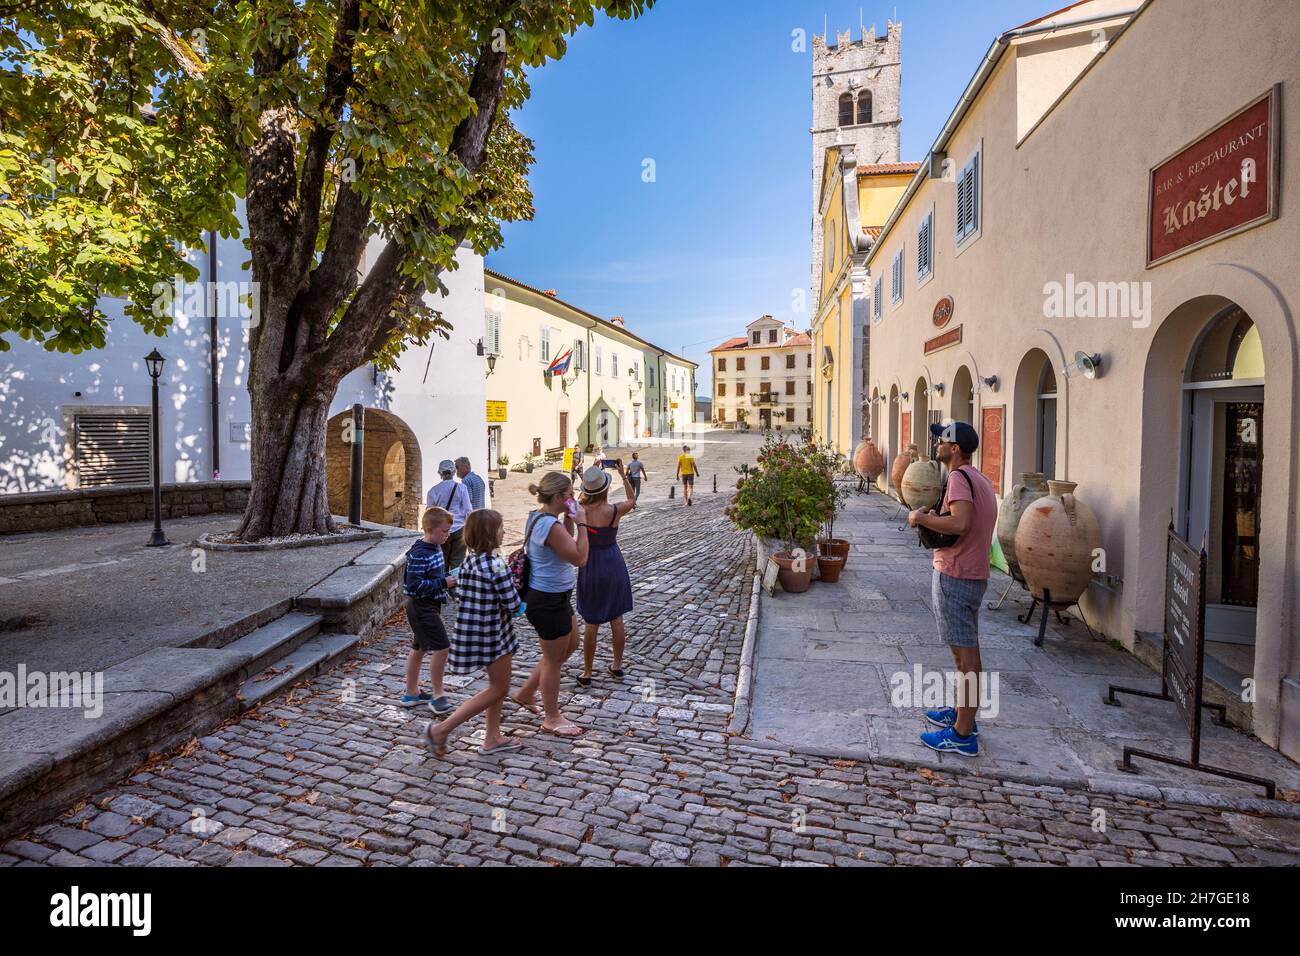 La vieille ville de Motovun, les touristes photographiant et explorant la vieille ville Banque D'Images